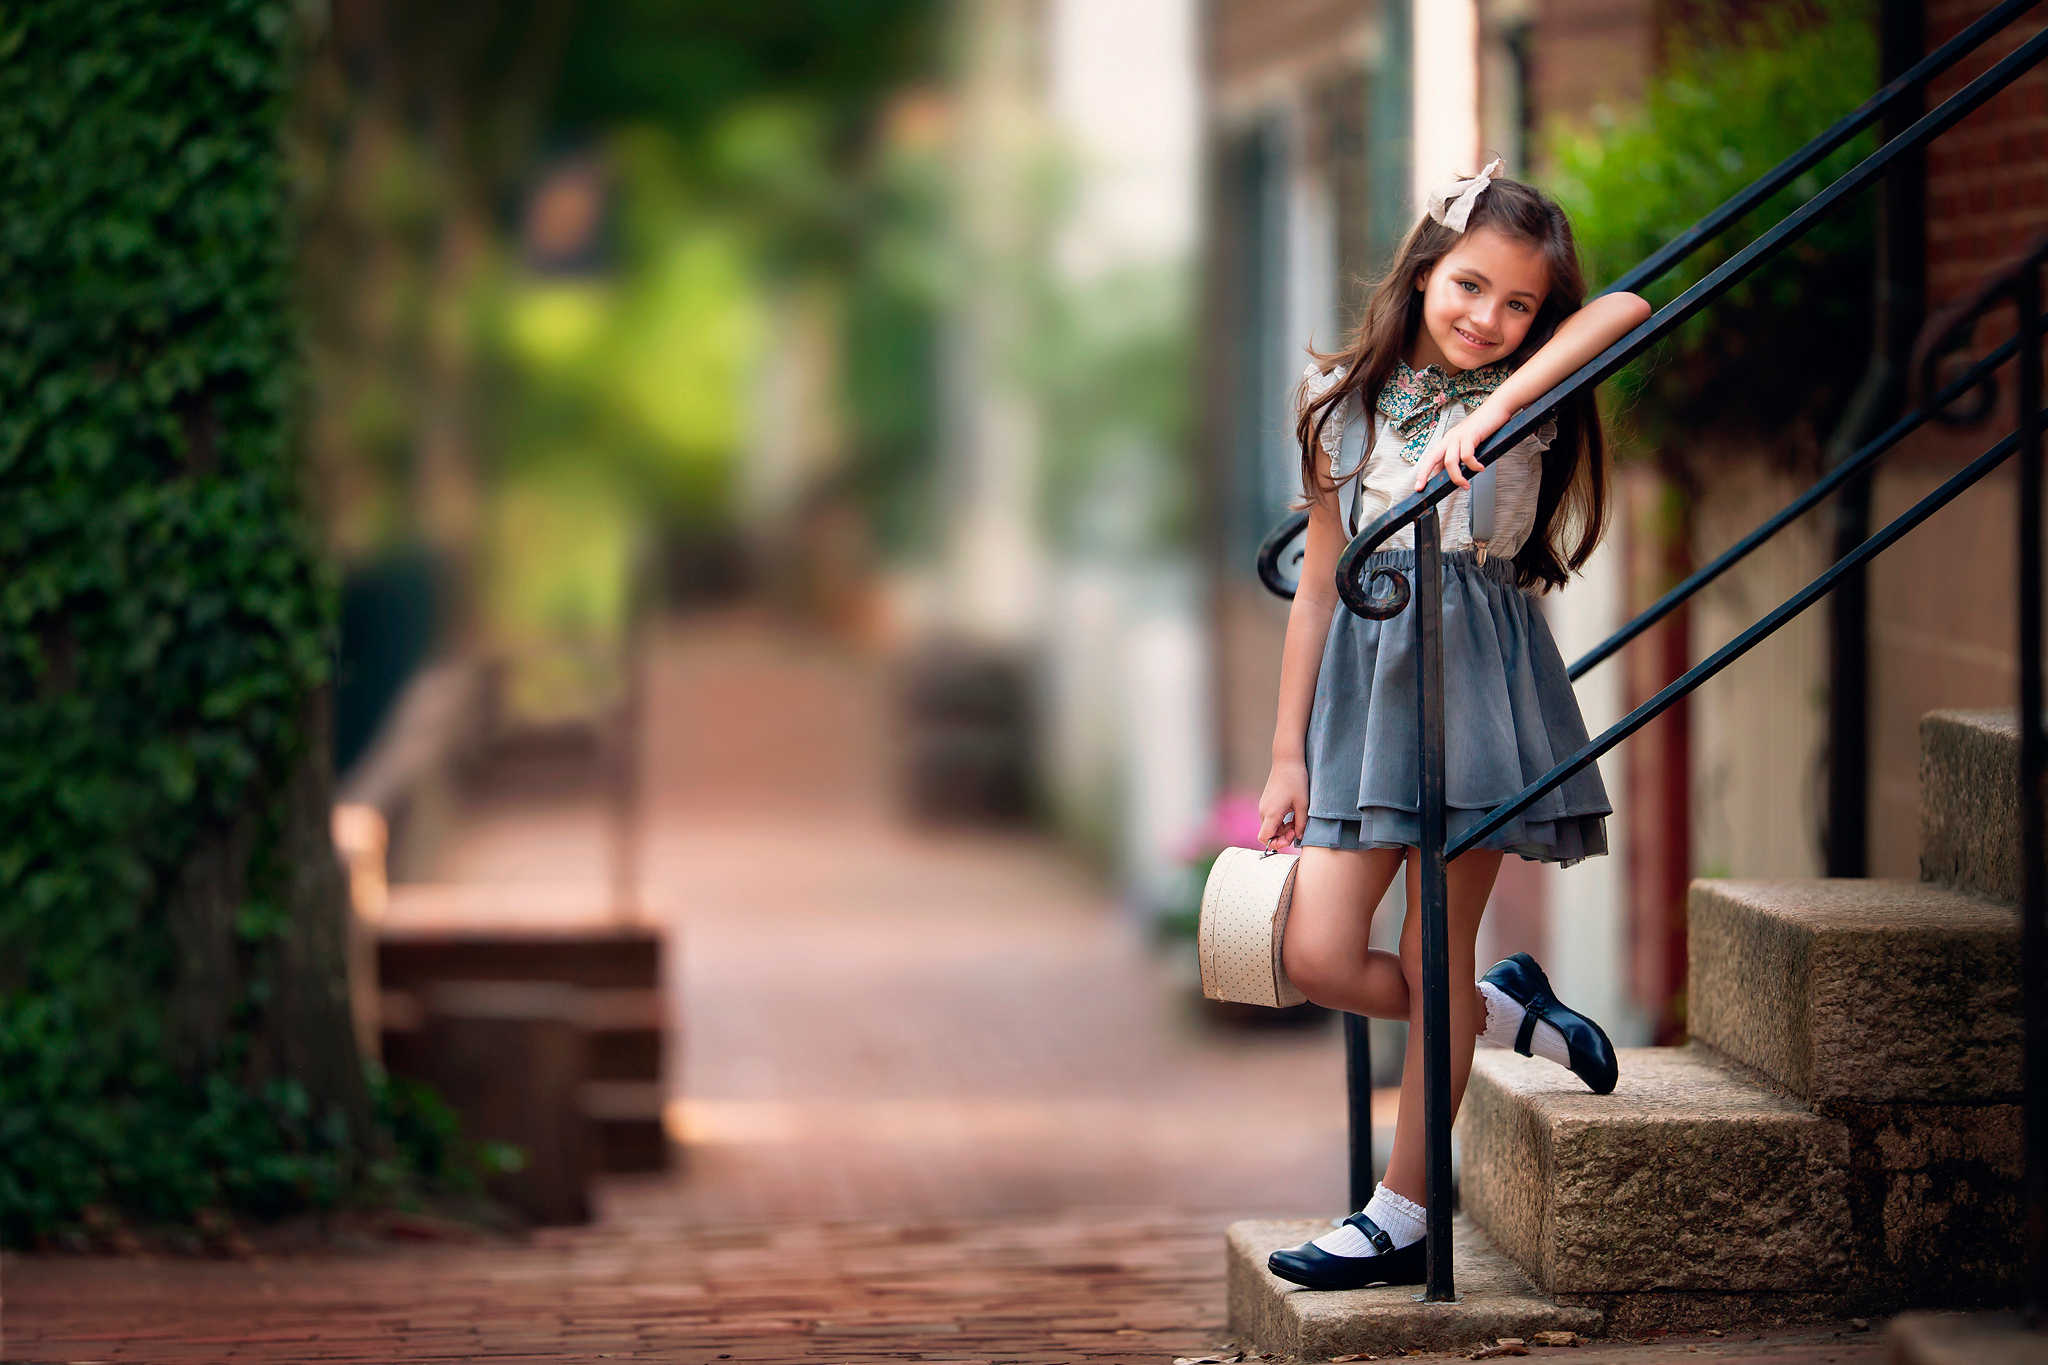 Картинка: Девочка, стоит, лестница, ступеньки, перила, улыбка, настроение, улица